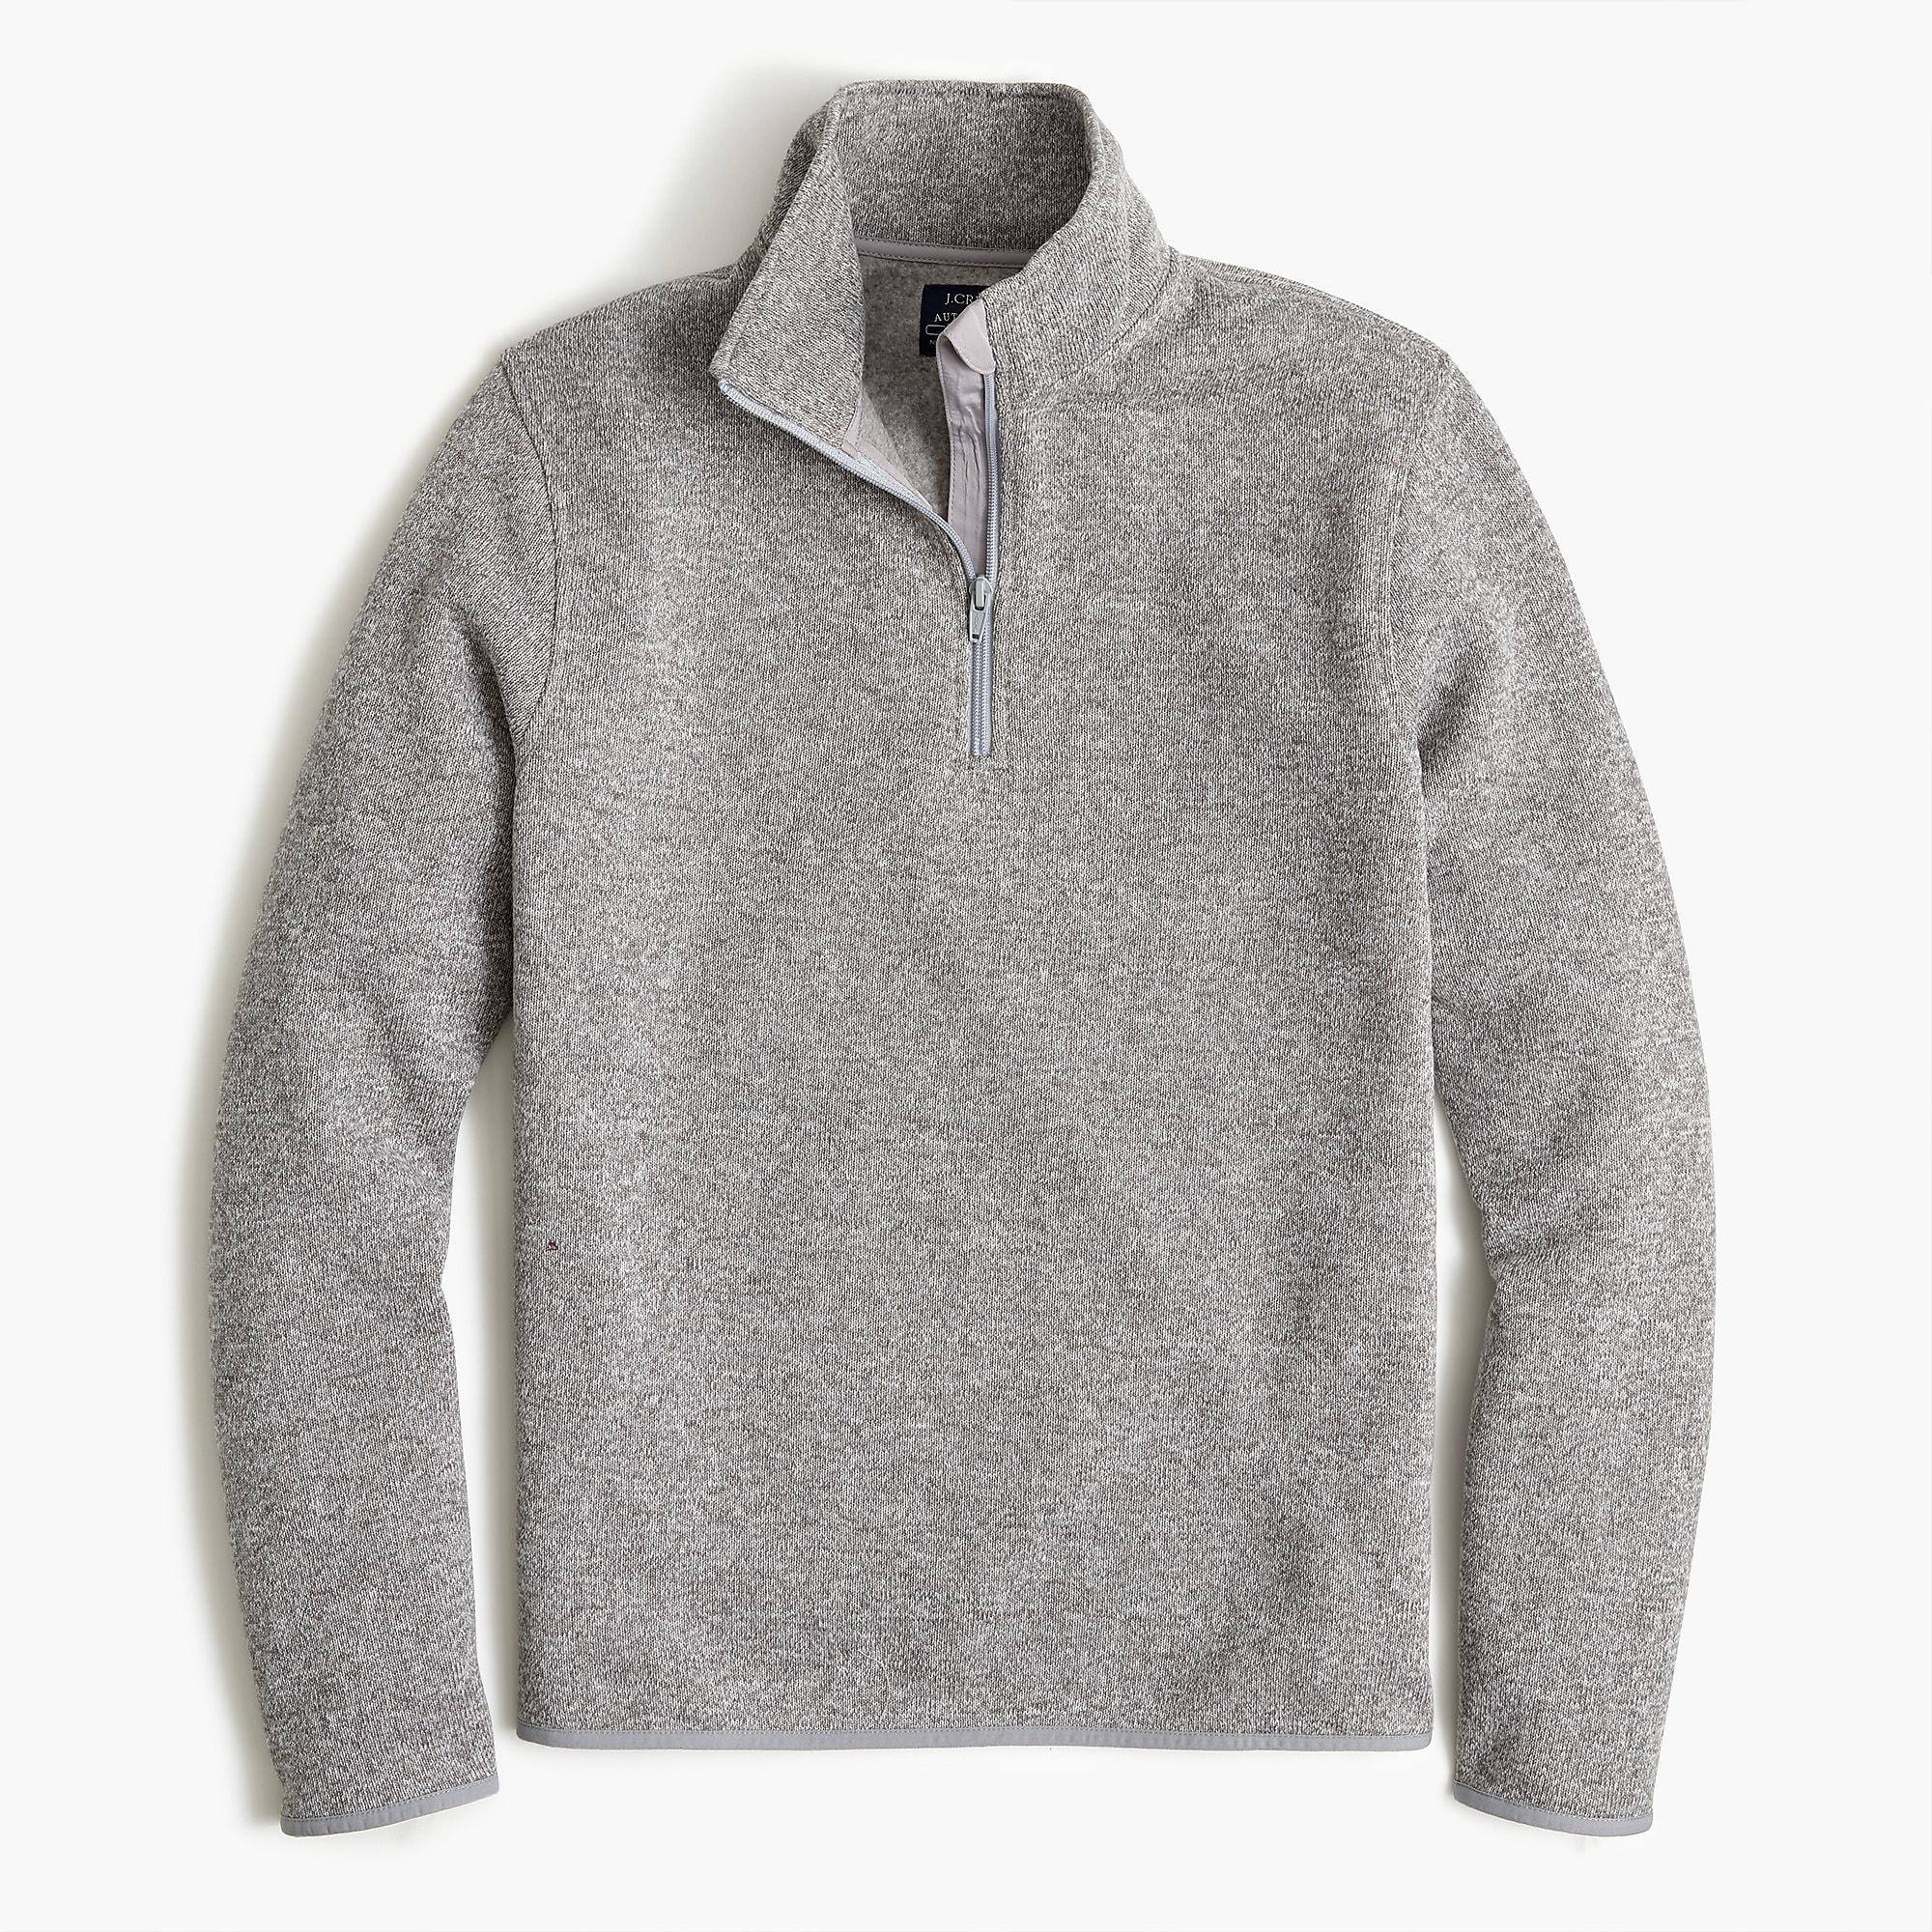 J.Crew Sweater Fleece Half-zip in Gray for Men - Lyst